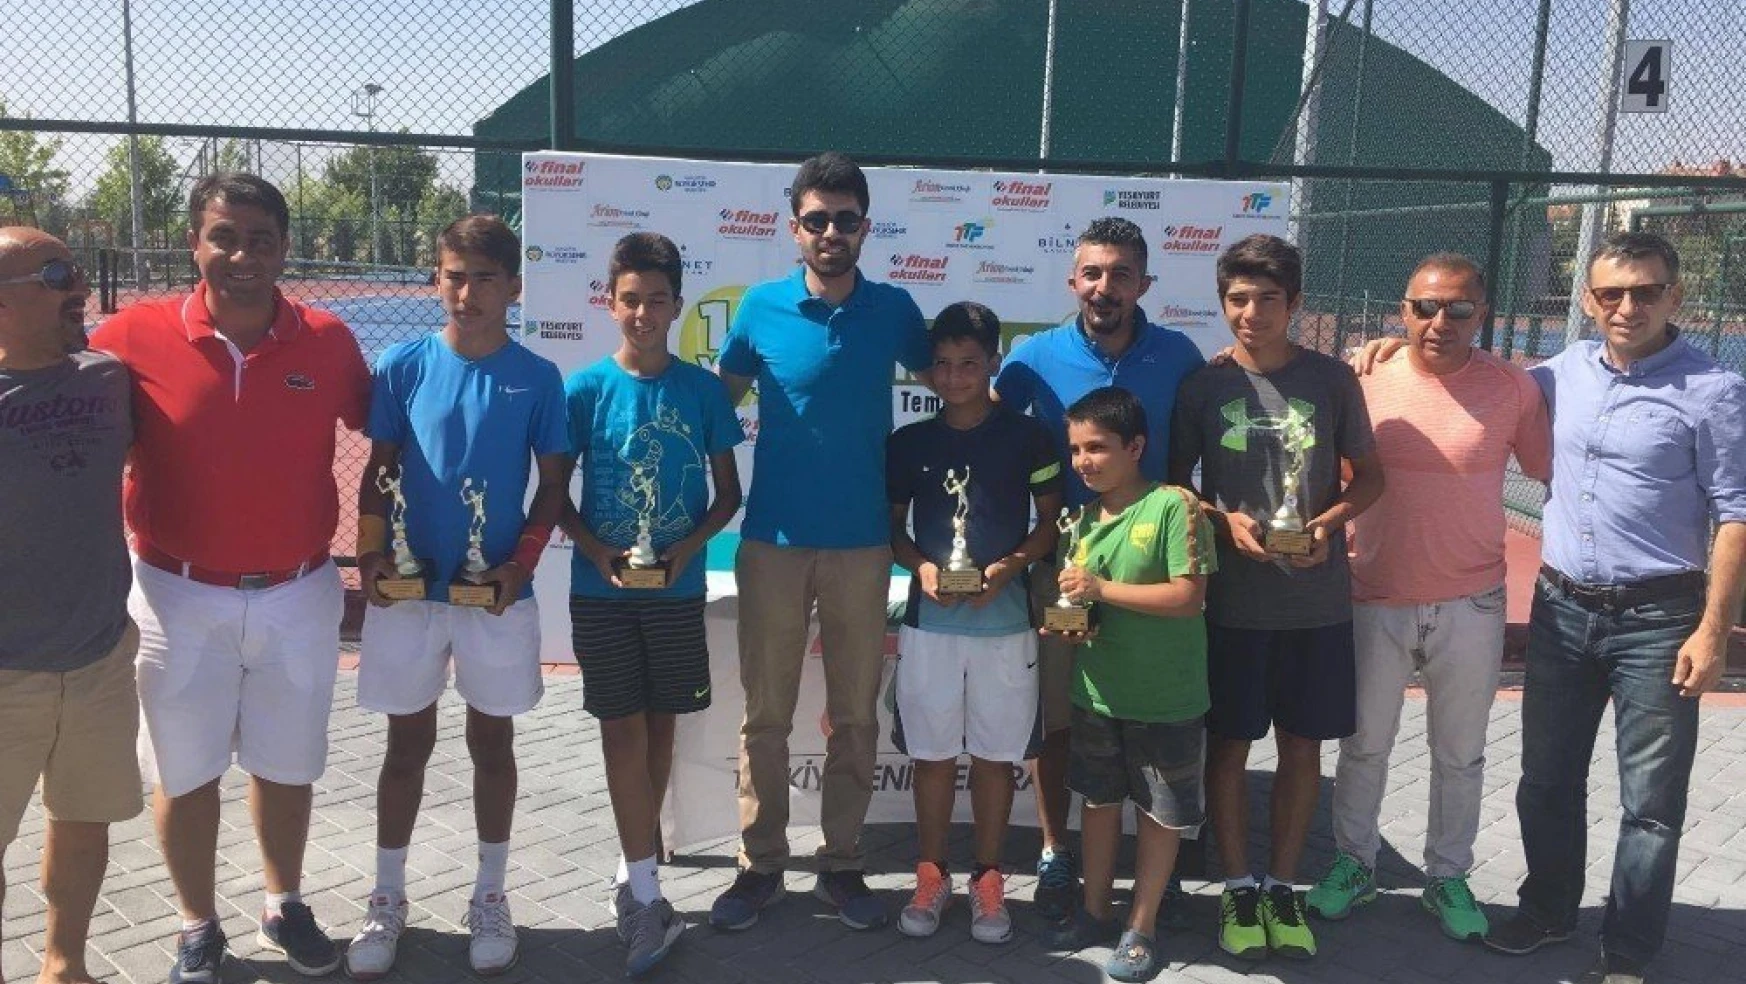 14 Yaş Yaz Kupası Tenis Turnuvası'nda final heyecanı yaşandı
